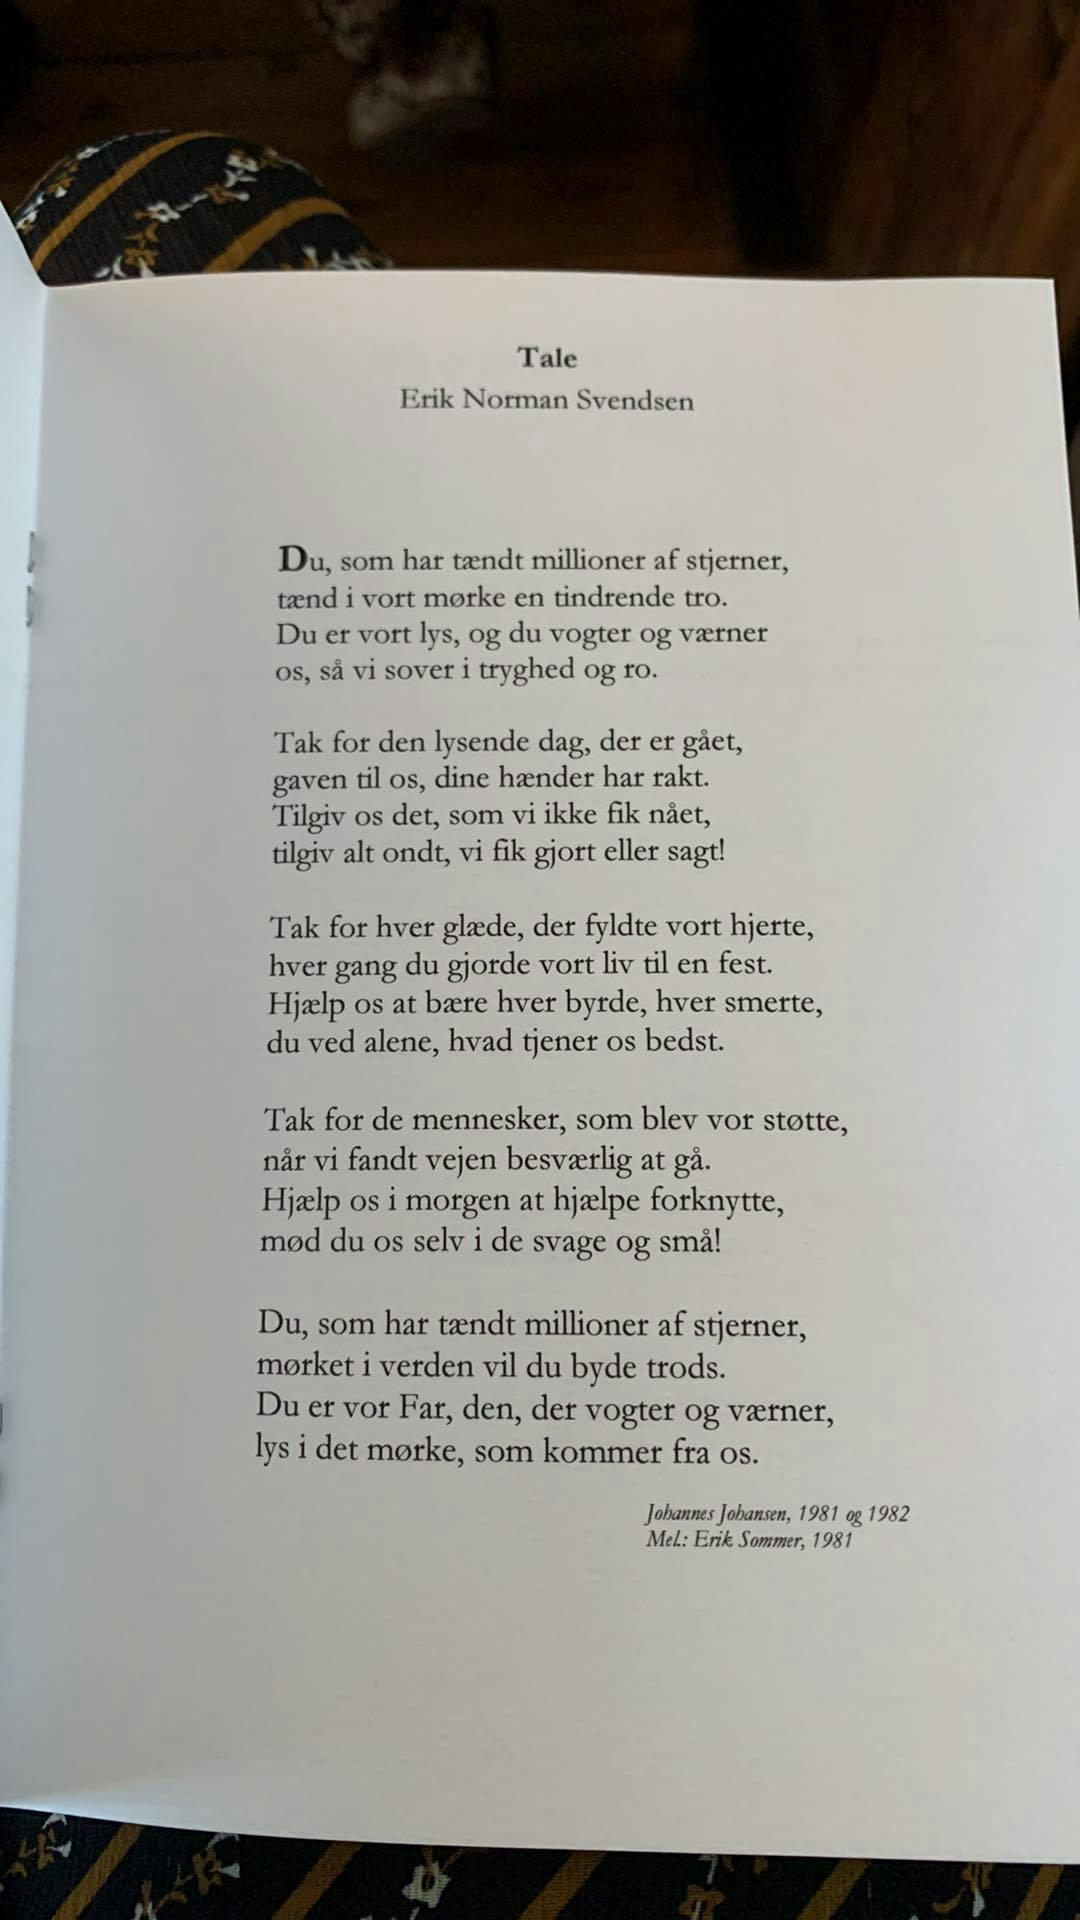 Det var i begyndelsen ikke meningen, at denne salme skulle synges. Men Uffe Ellemann-Jensen valgte selv at tilføje salmen, da han ønskede en salme, som folk kunne synge med på.
